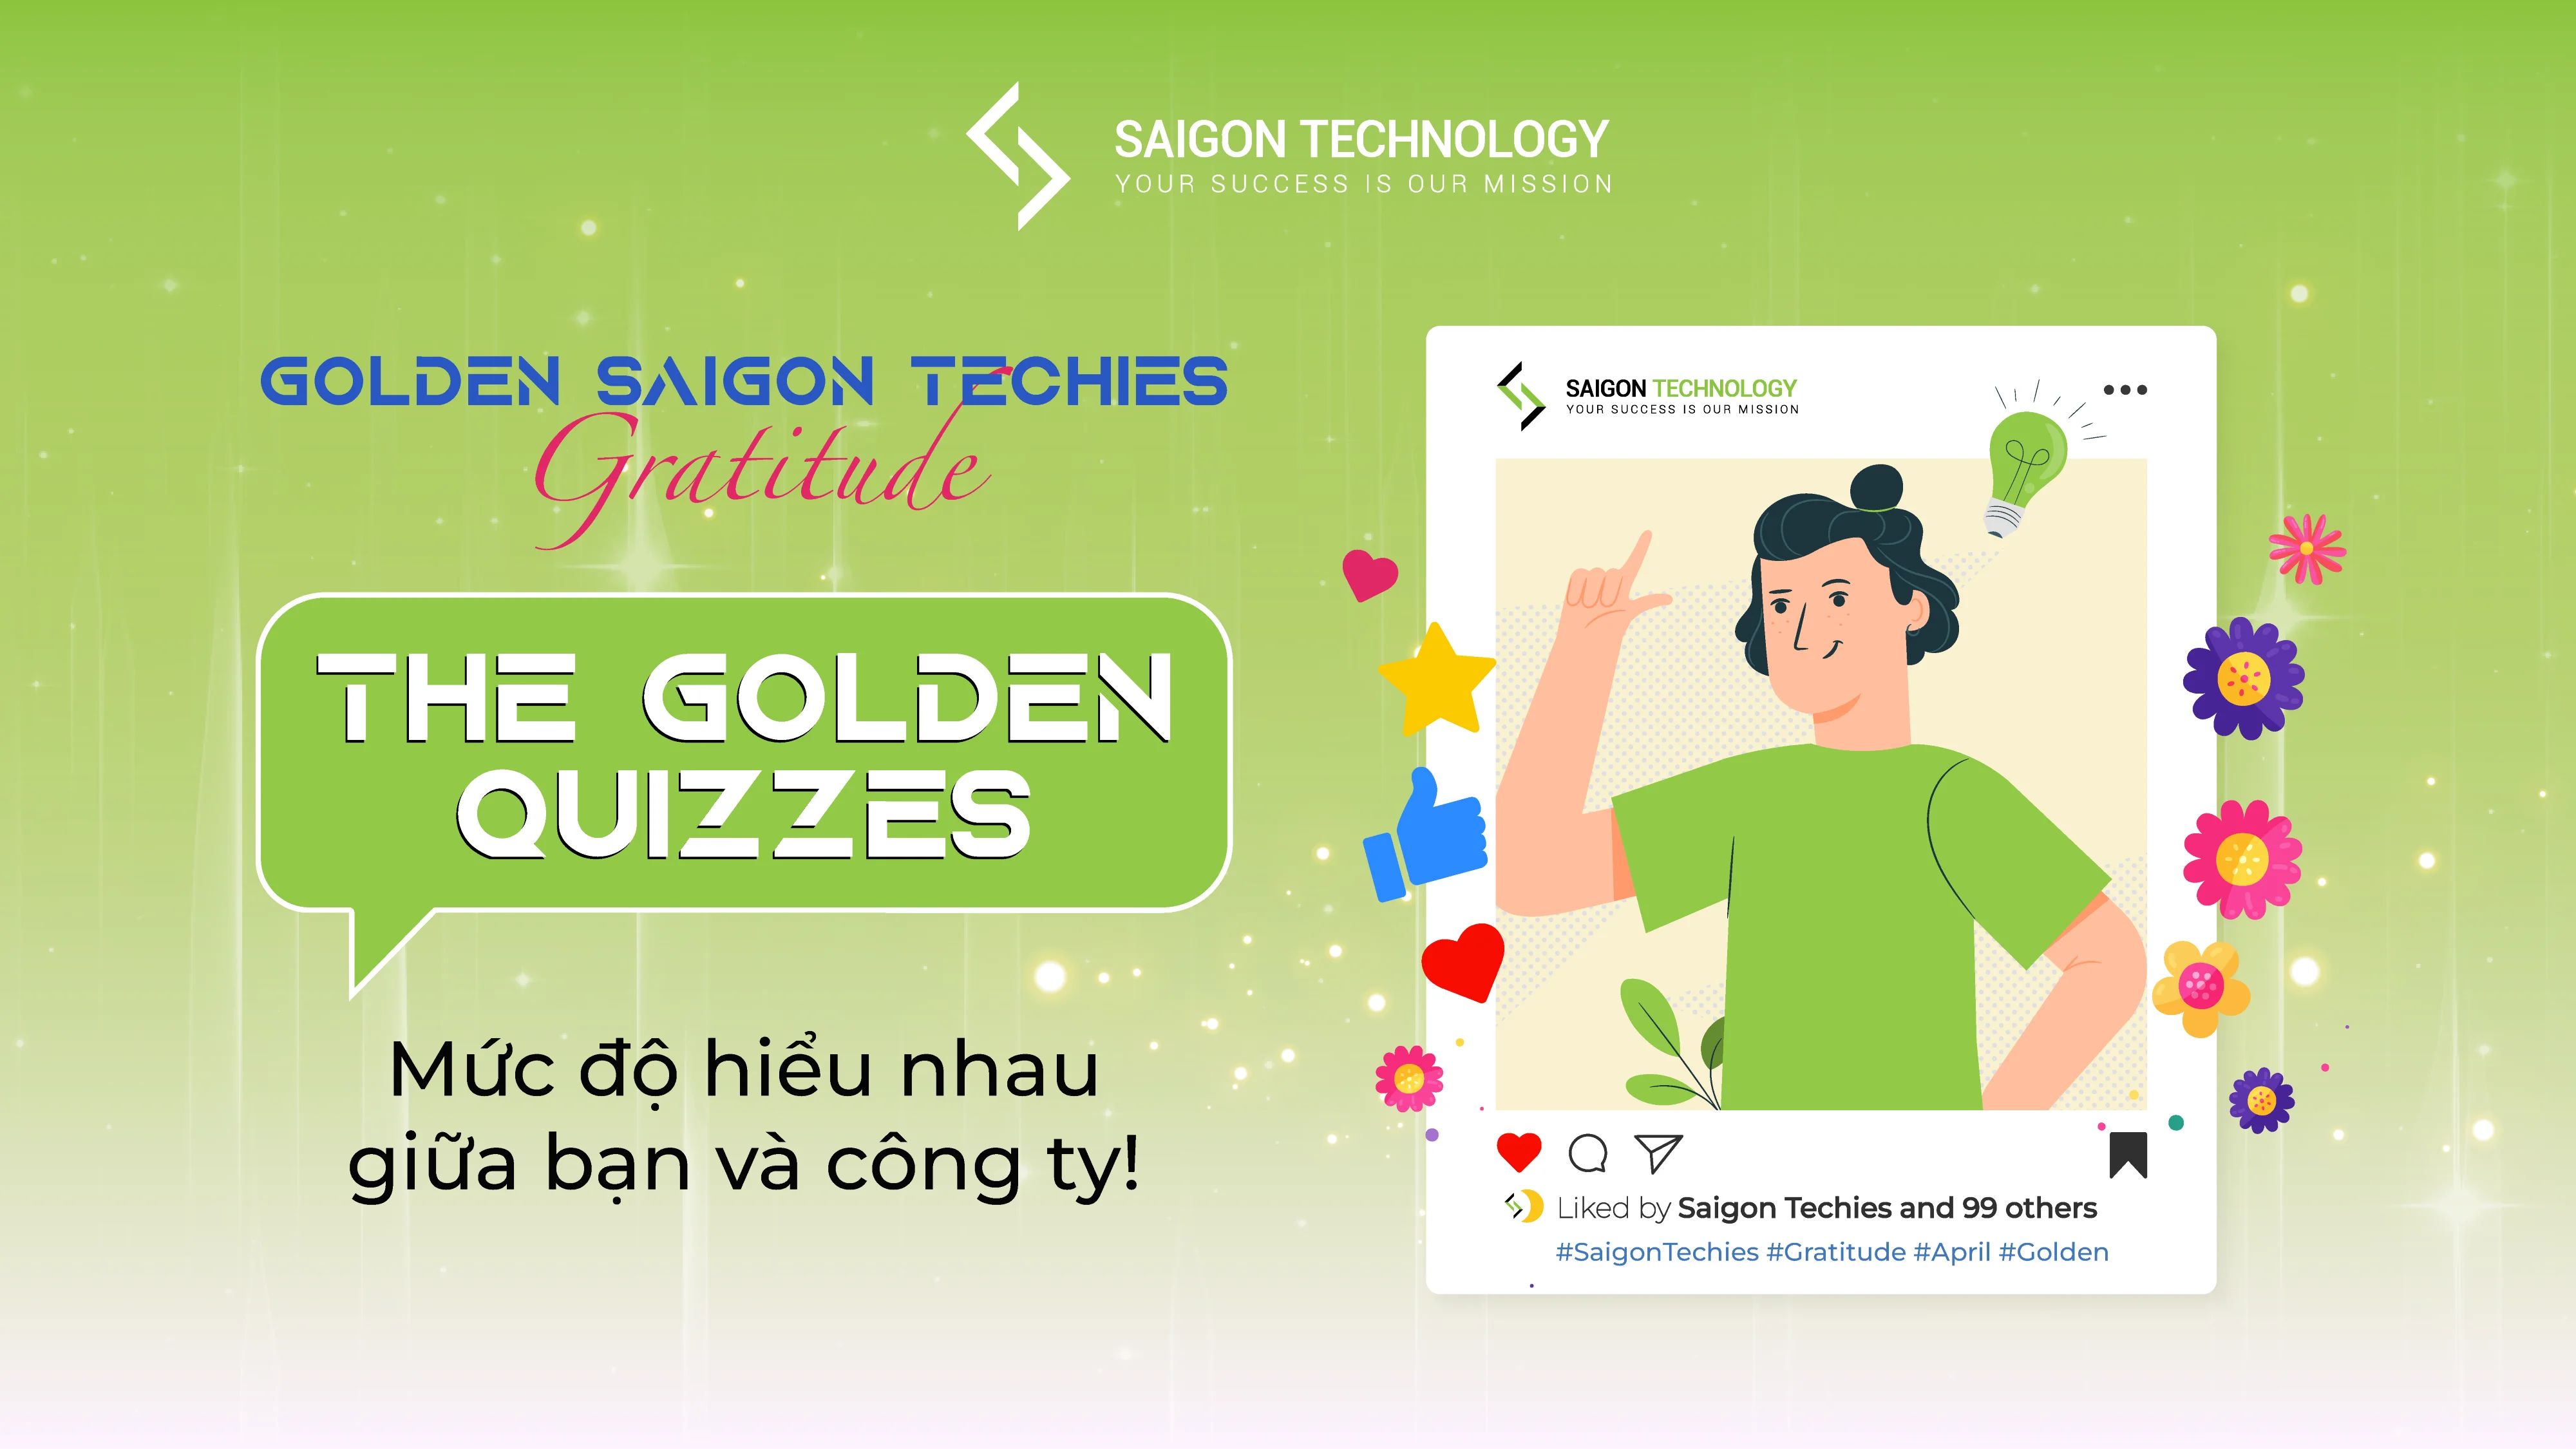 Minigame - "Test" độ hiểu nhau giữa bạn và Saigon Technology!